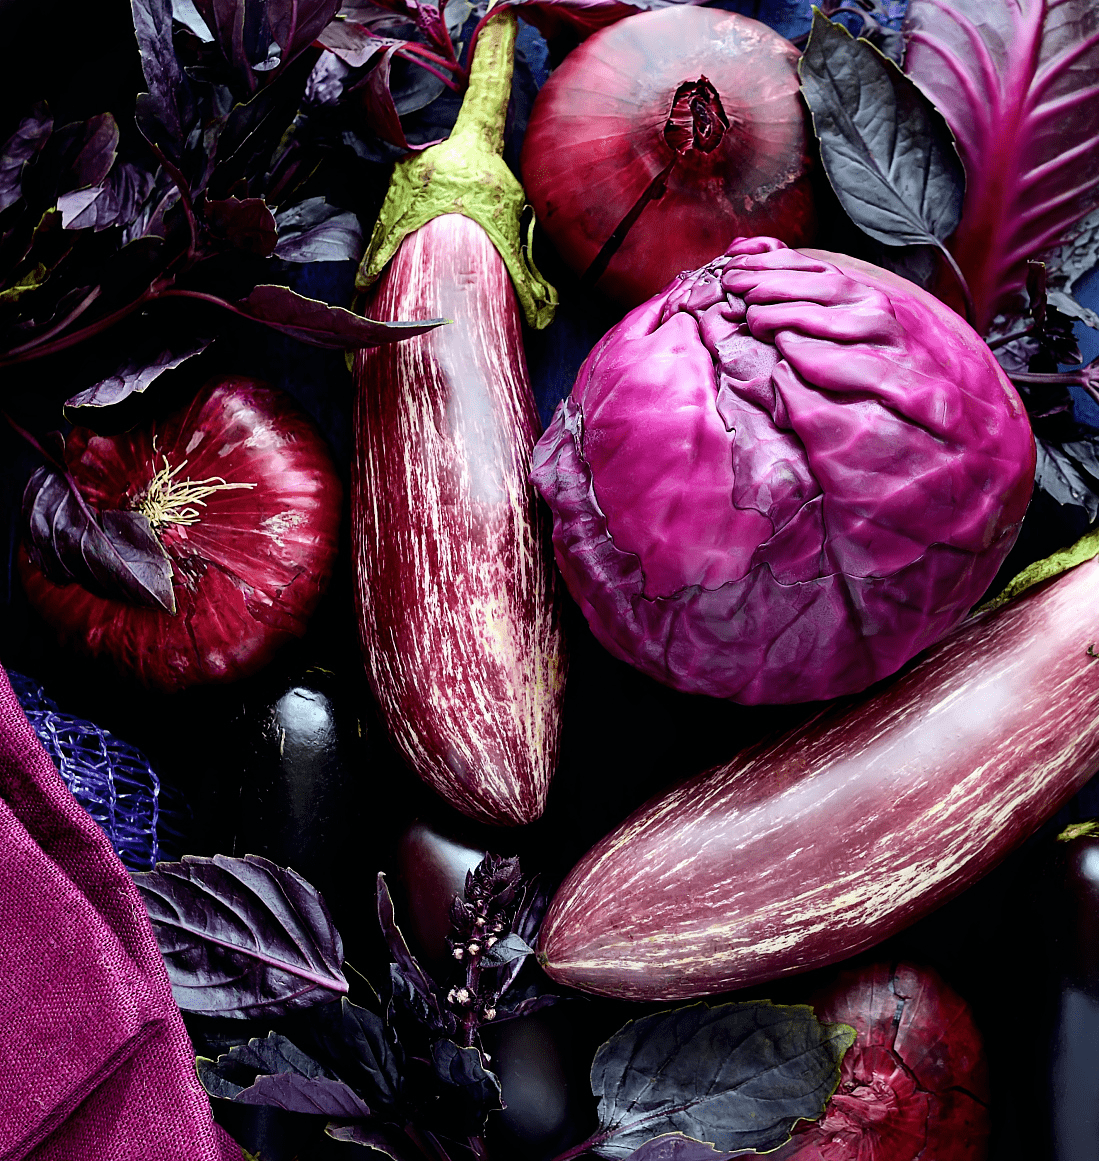 紫蔬菜图片大全-紫蔬菜高清图片下载-觅知网